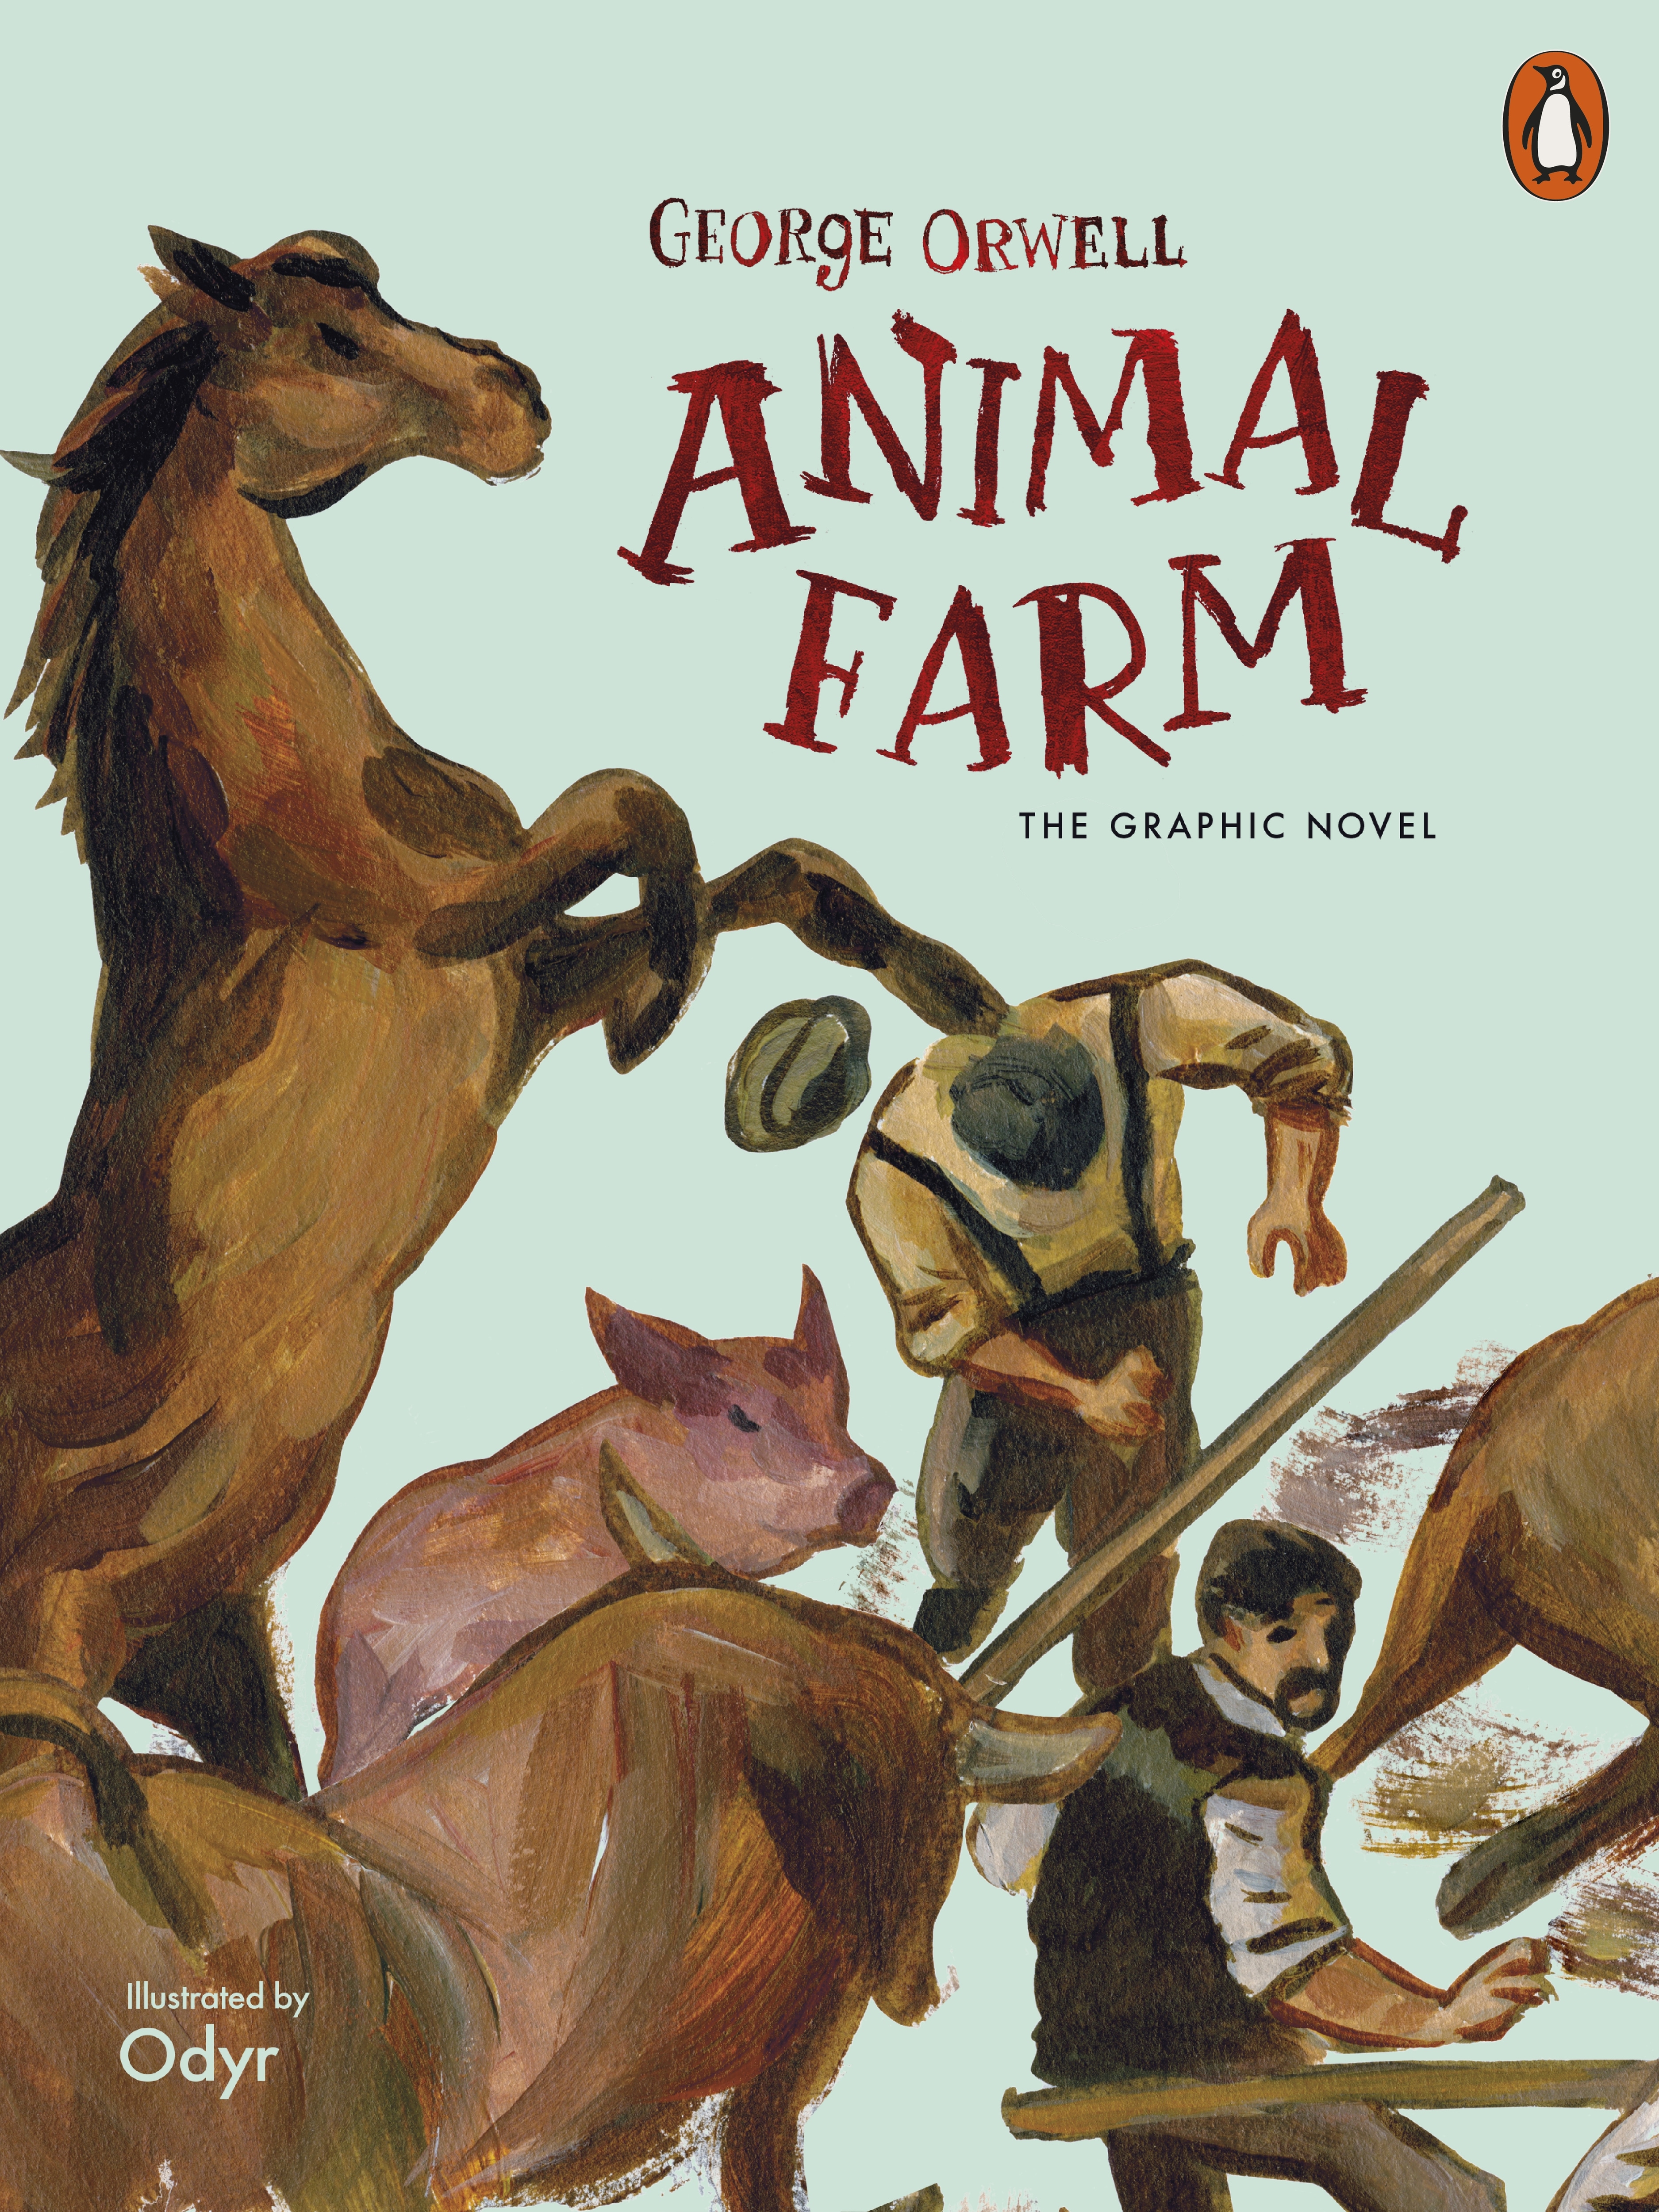 Book “Animal Farm” by George Orwell, Odyr — August 6, 2020